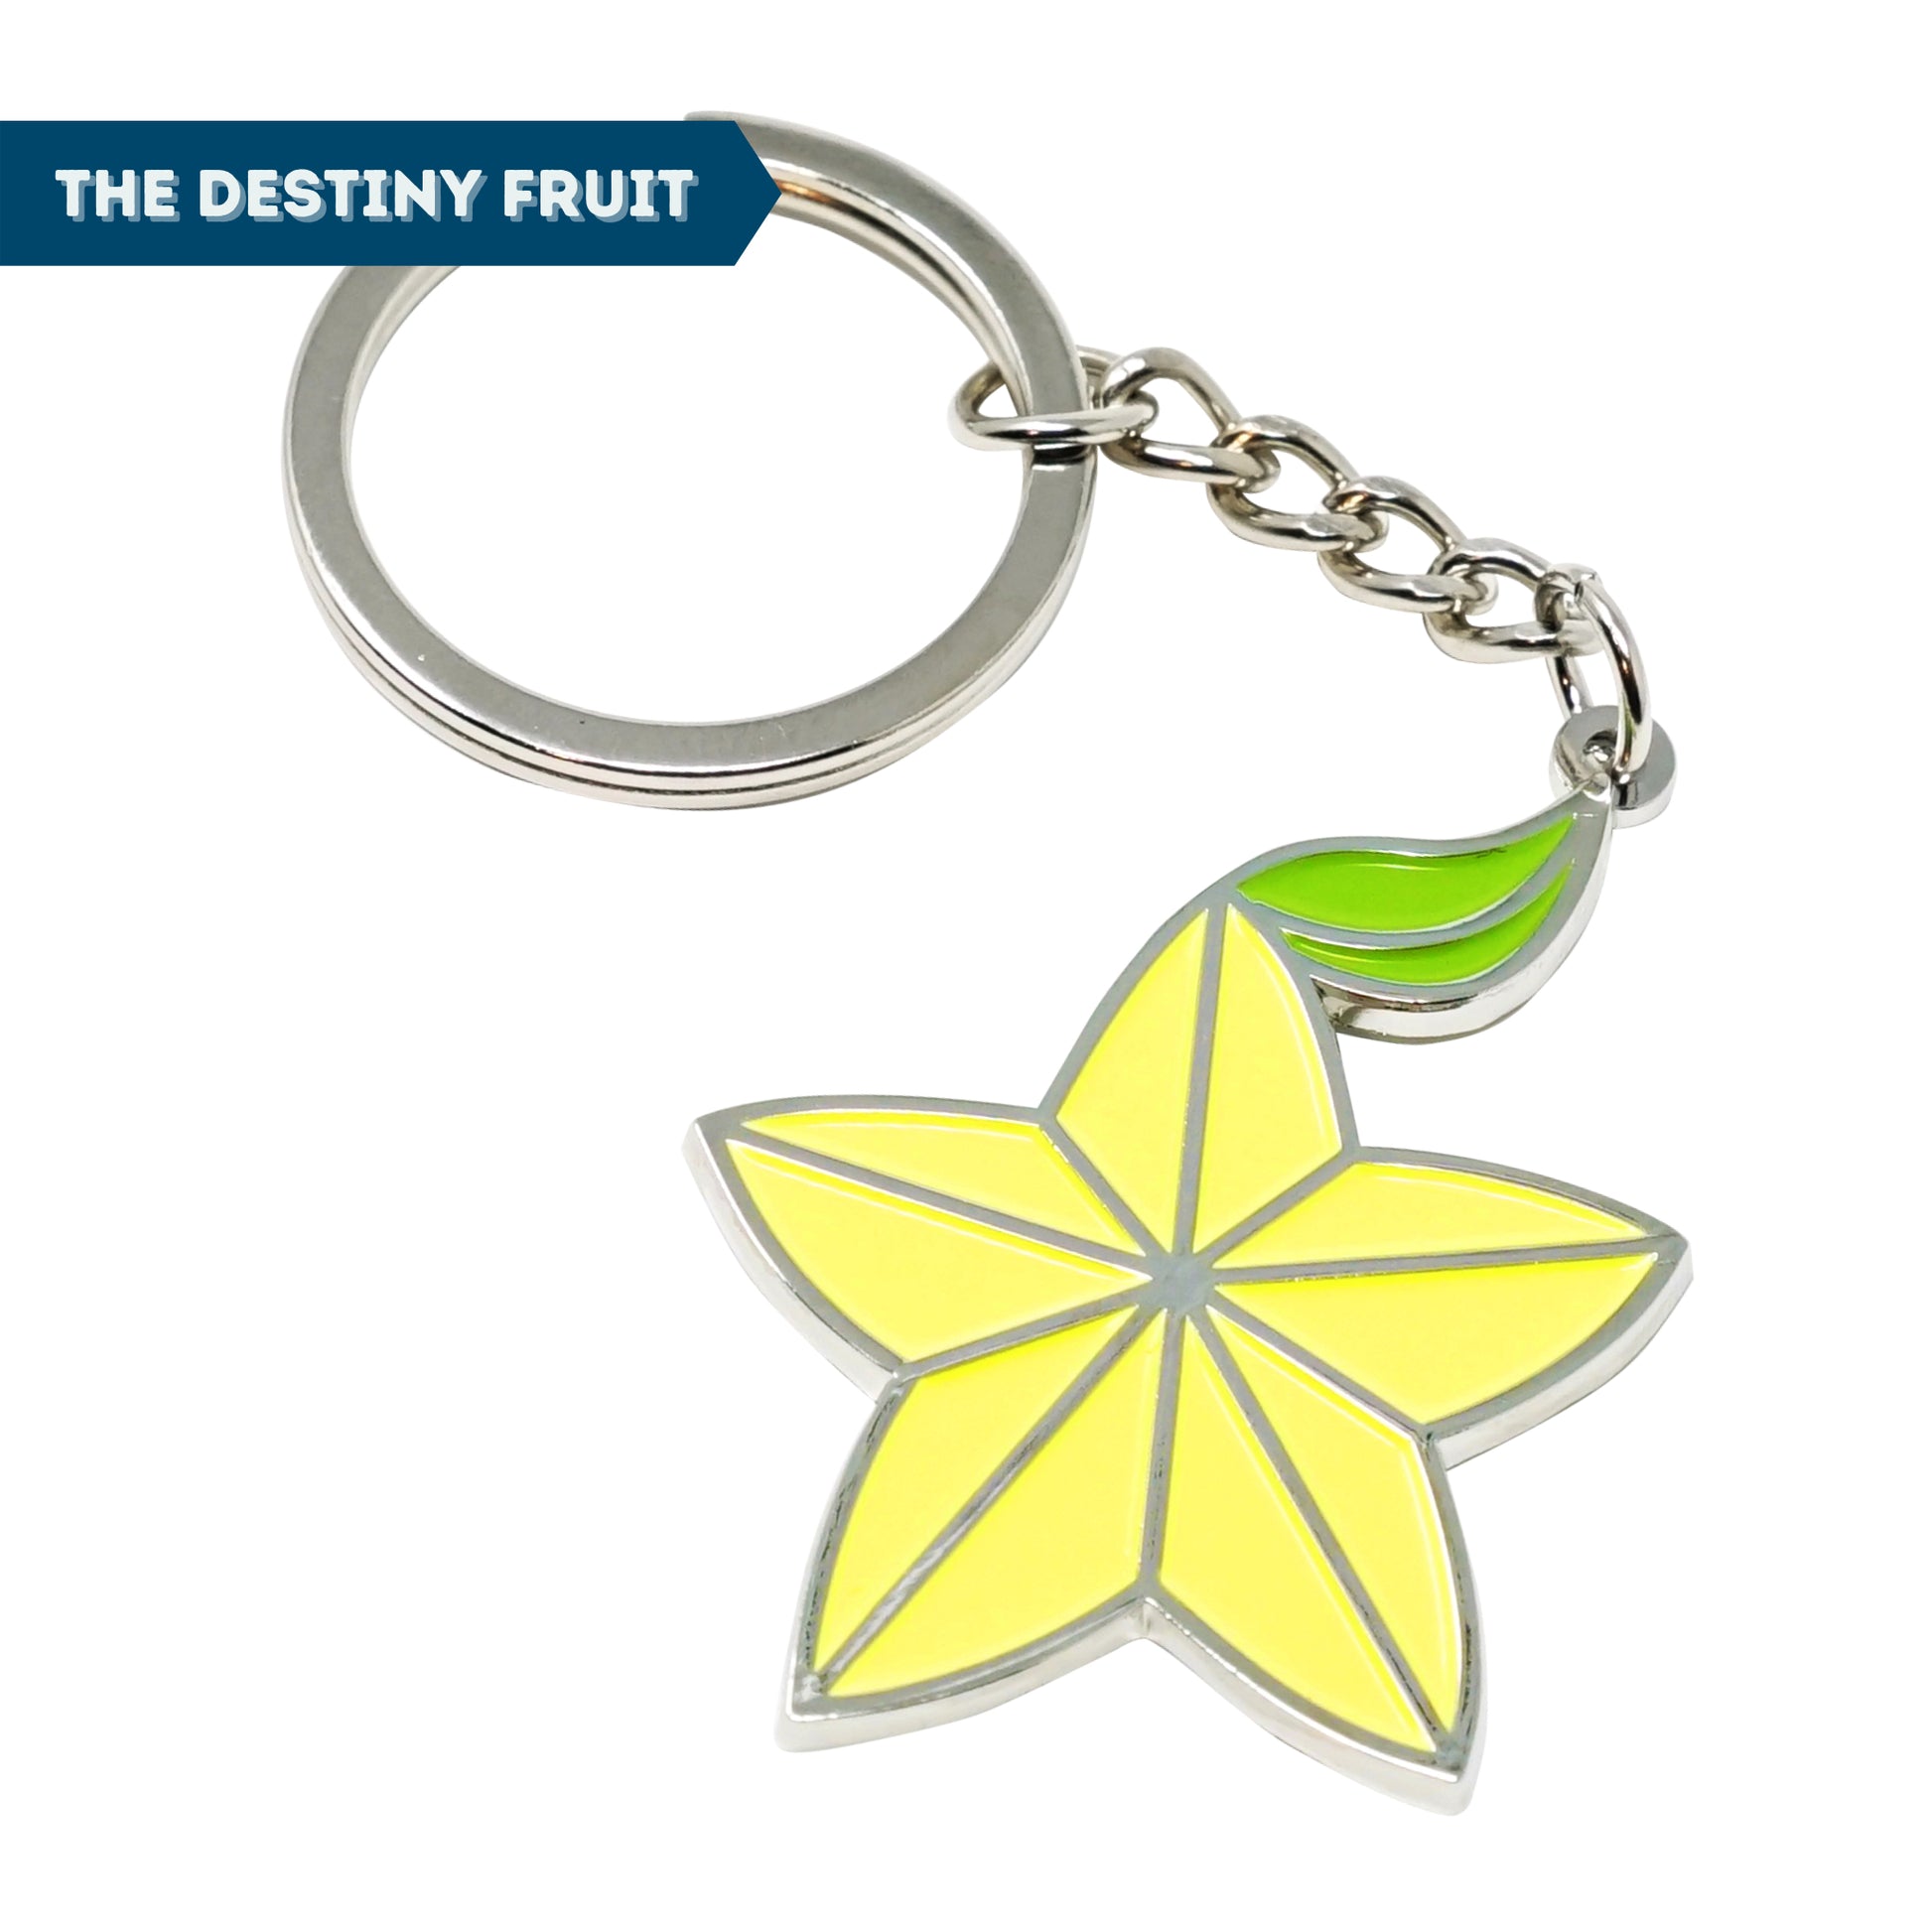 Kingdom Key + Destiny Fruit